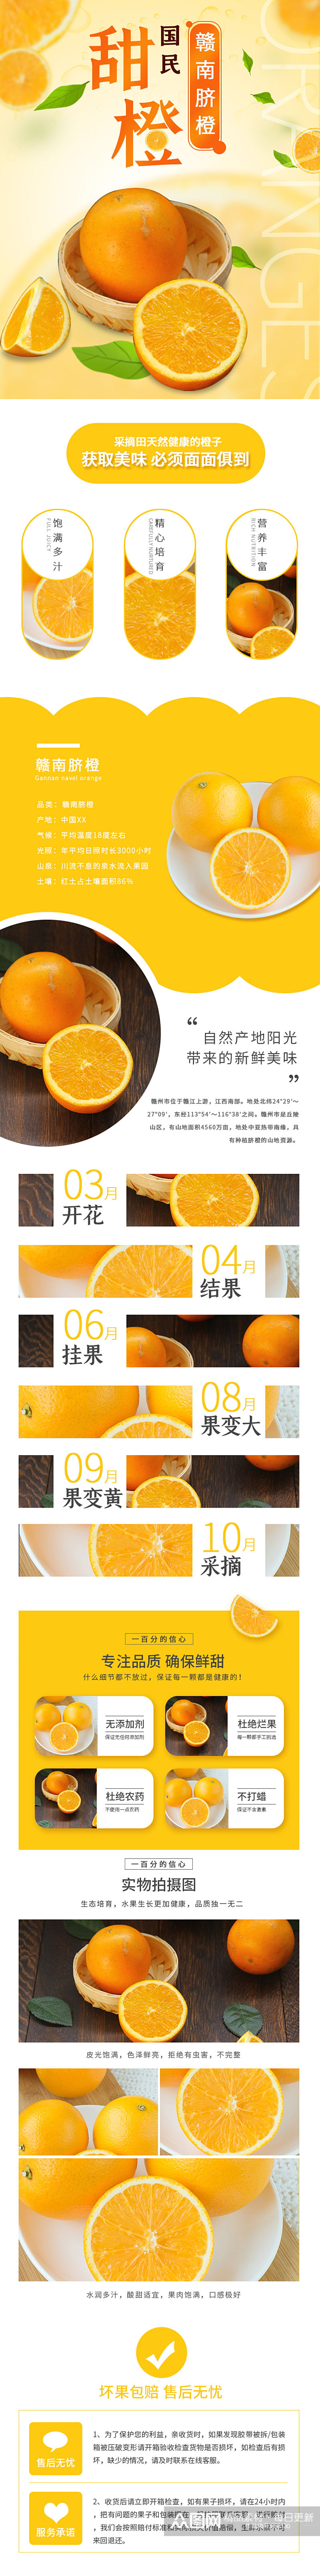 脐橙橙子水果食品淘宝描述详情页素材